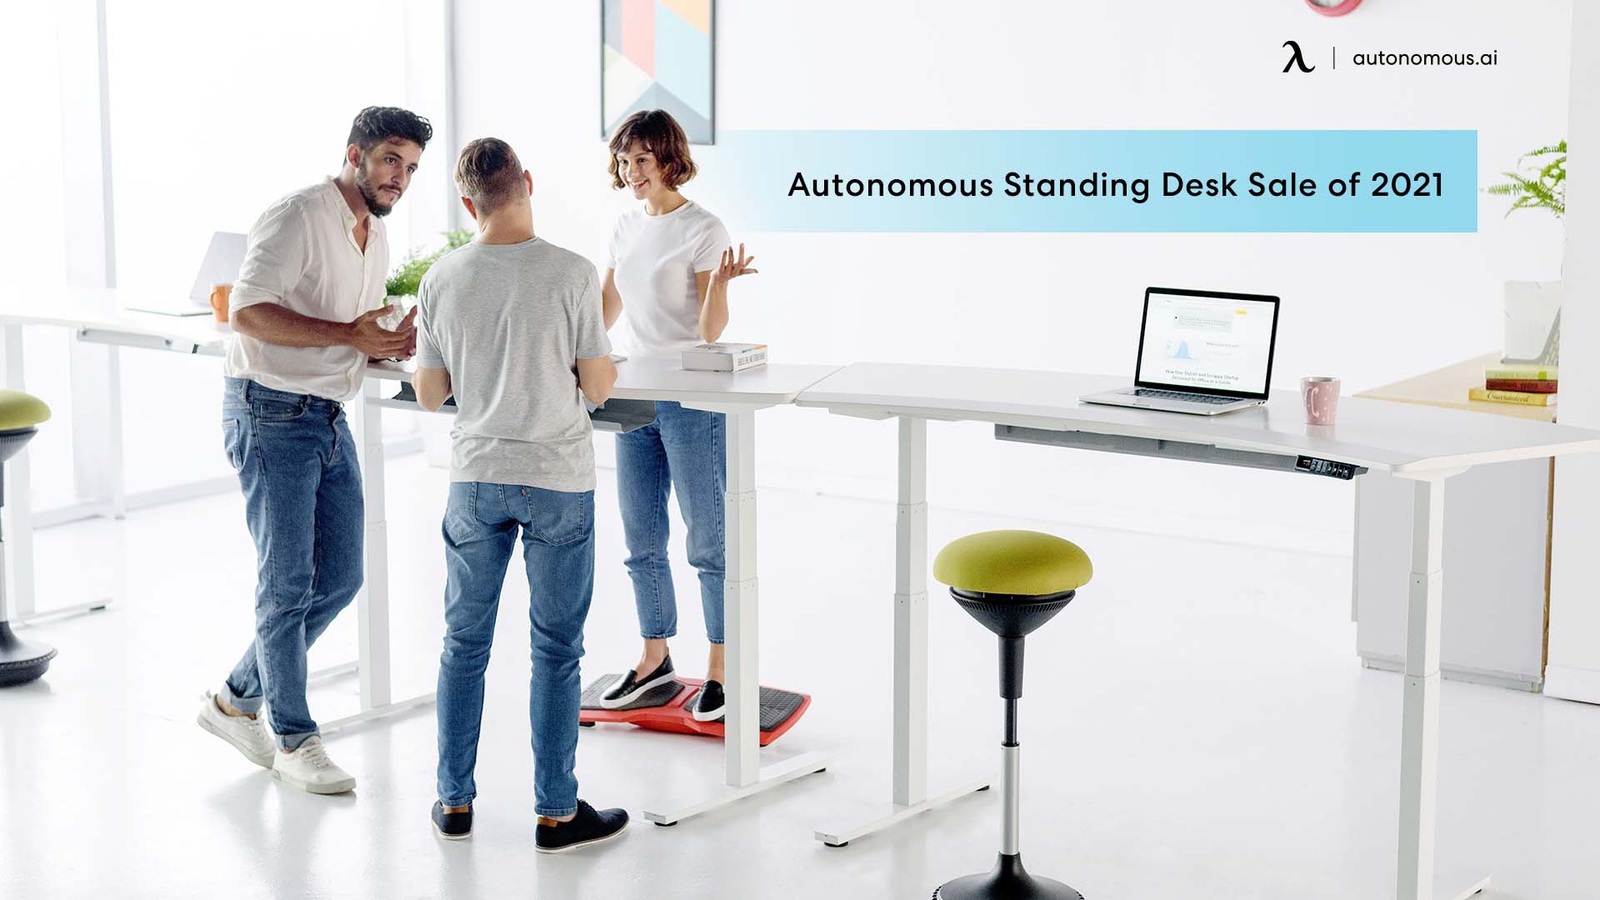 Autonomous Standing Desk Sale of 2021 - Best Office Desk Deal